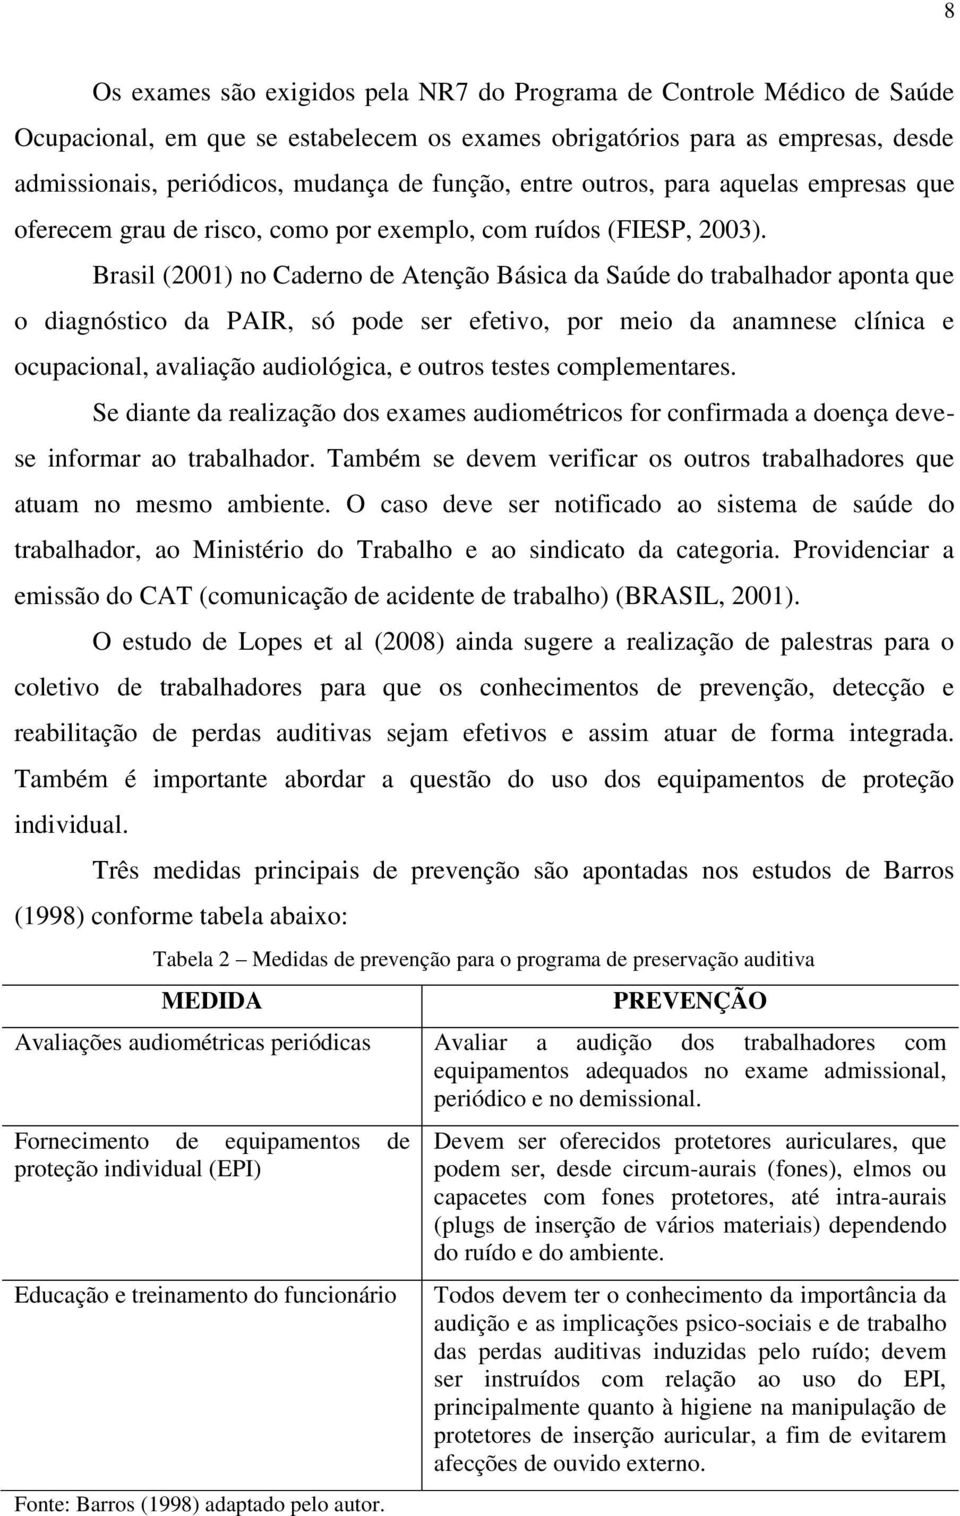 Brasil (2001) no Caderno de Atenção Básica da Saúde do trabalhador aponta que o diagnóstico da PAIR, só pode ser efetivo, por meio da anamnese clínica e ocupacional, avaliação audiológica, e outros